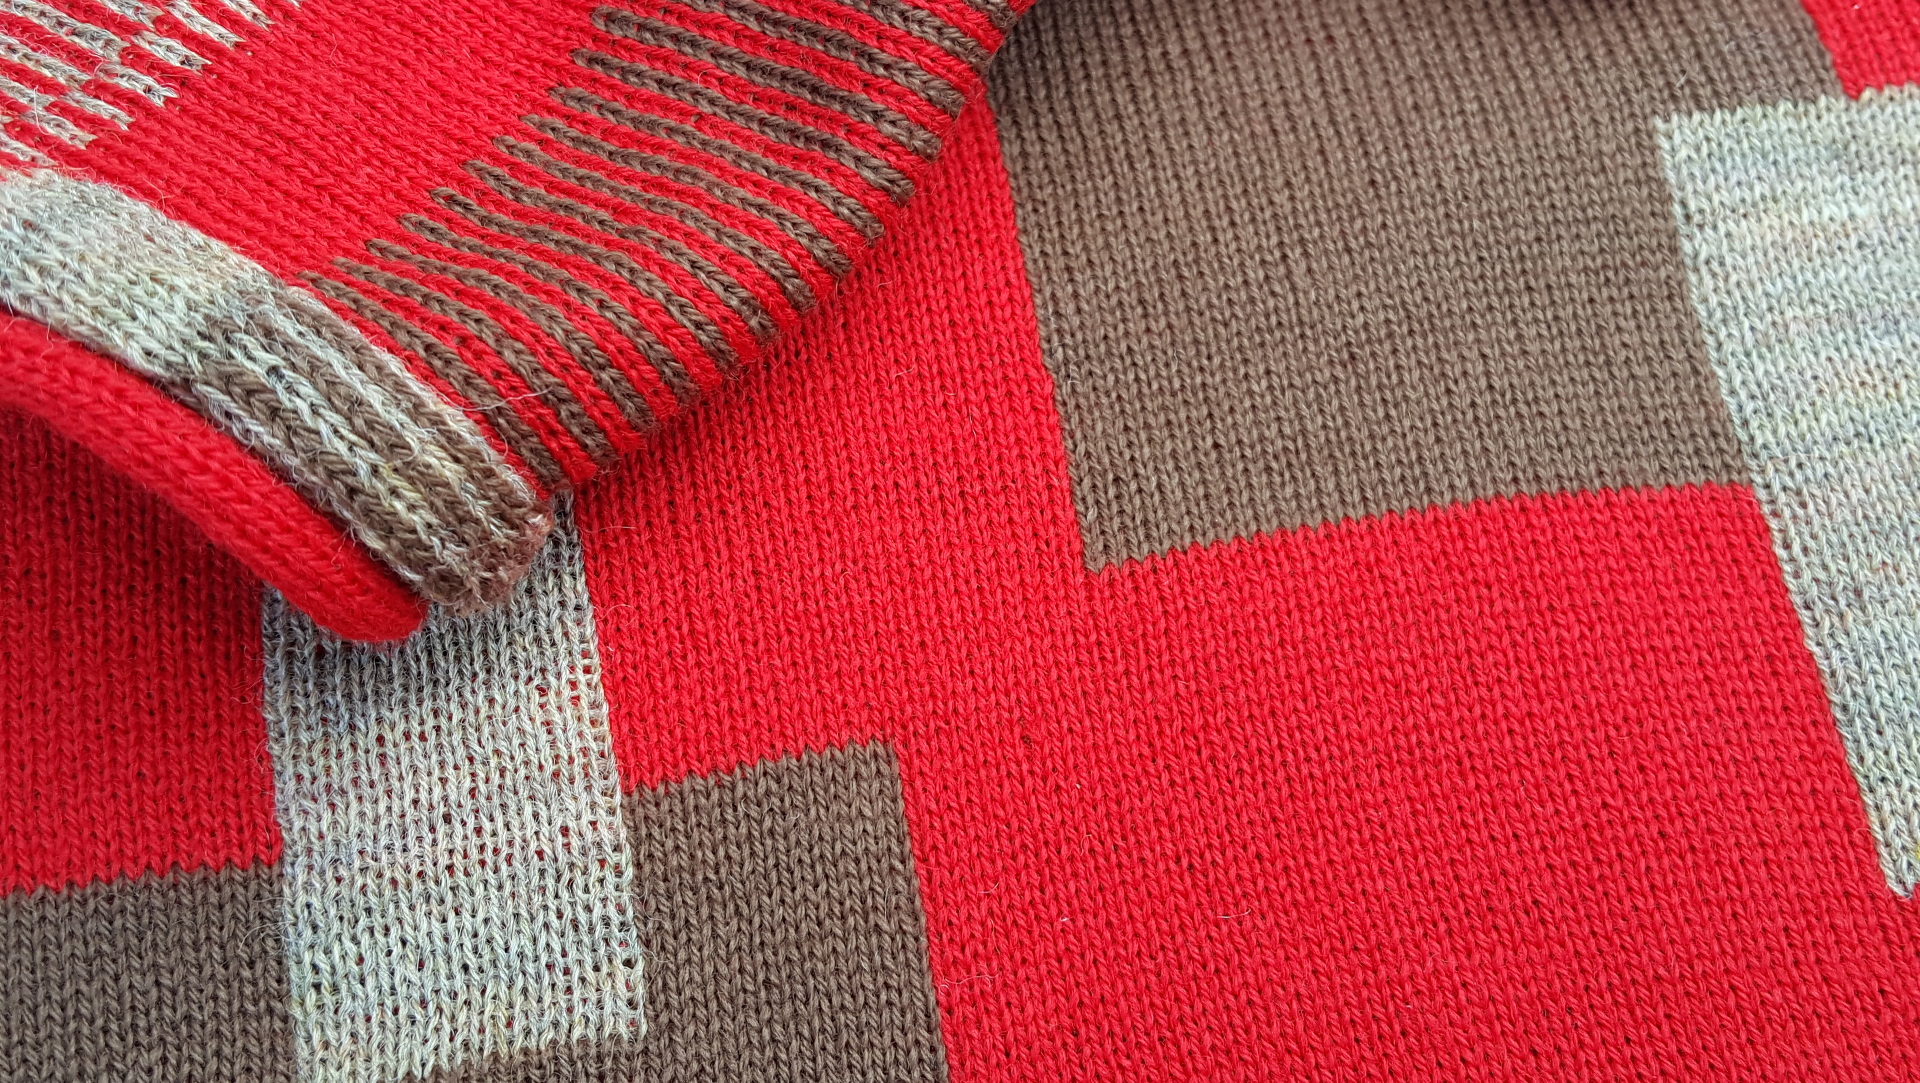 Wool jacquard sweater knit fabric